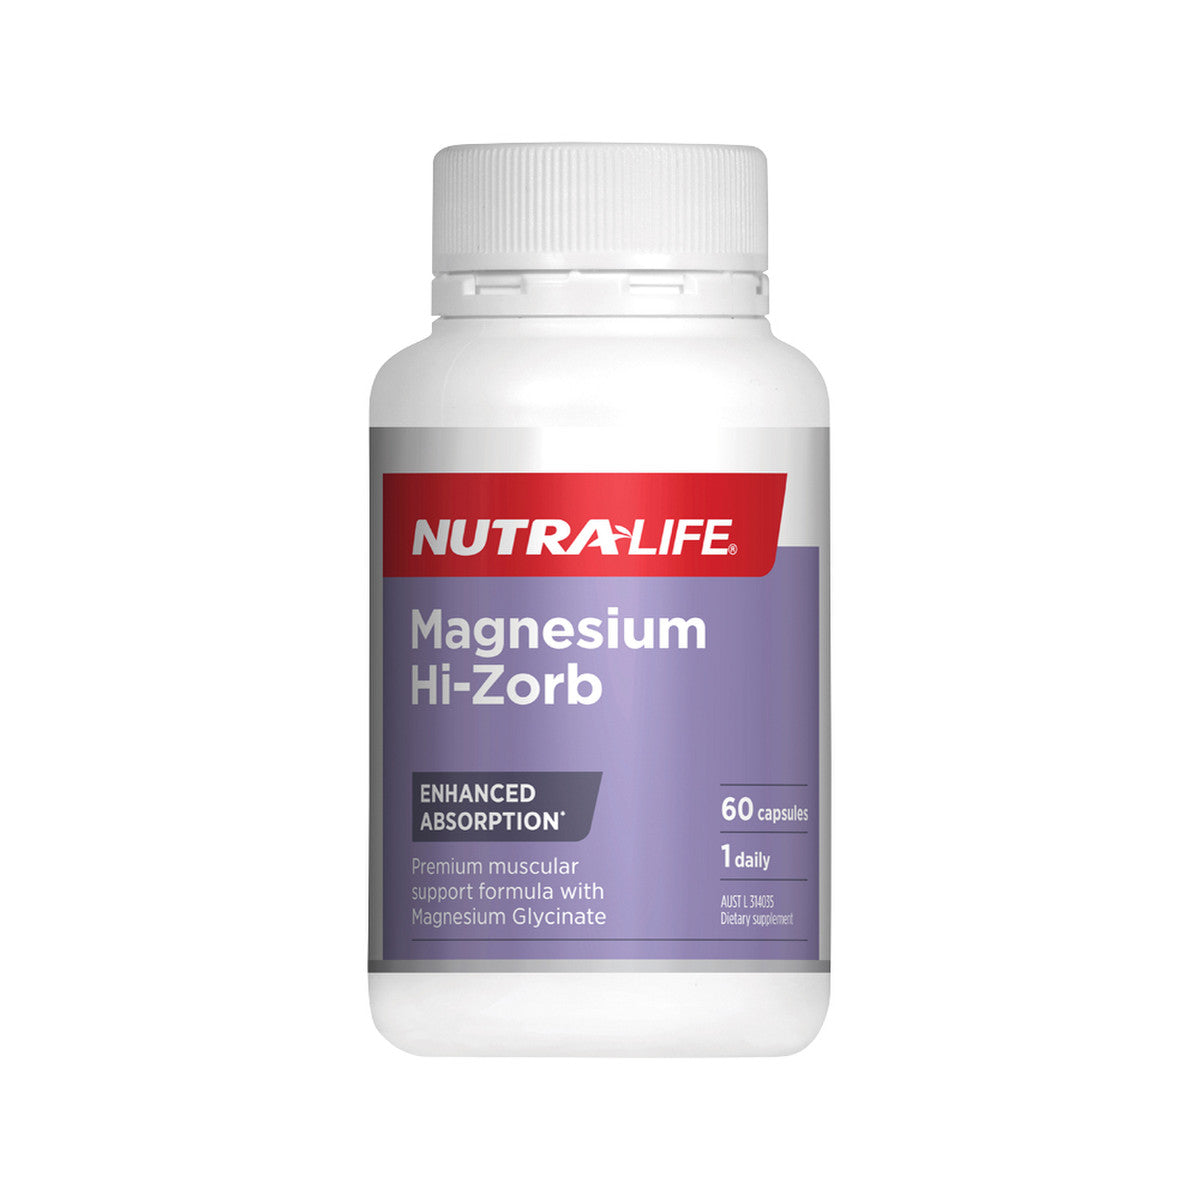 NutraLife - Magnesium Hi-Zorb